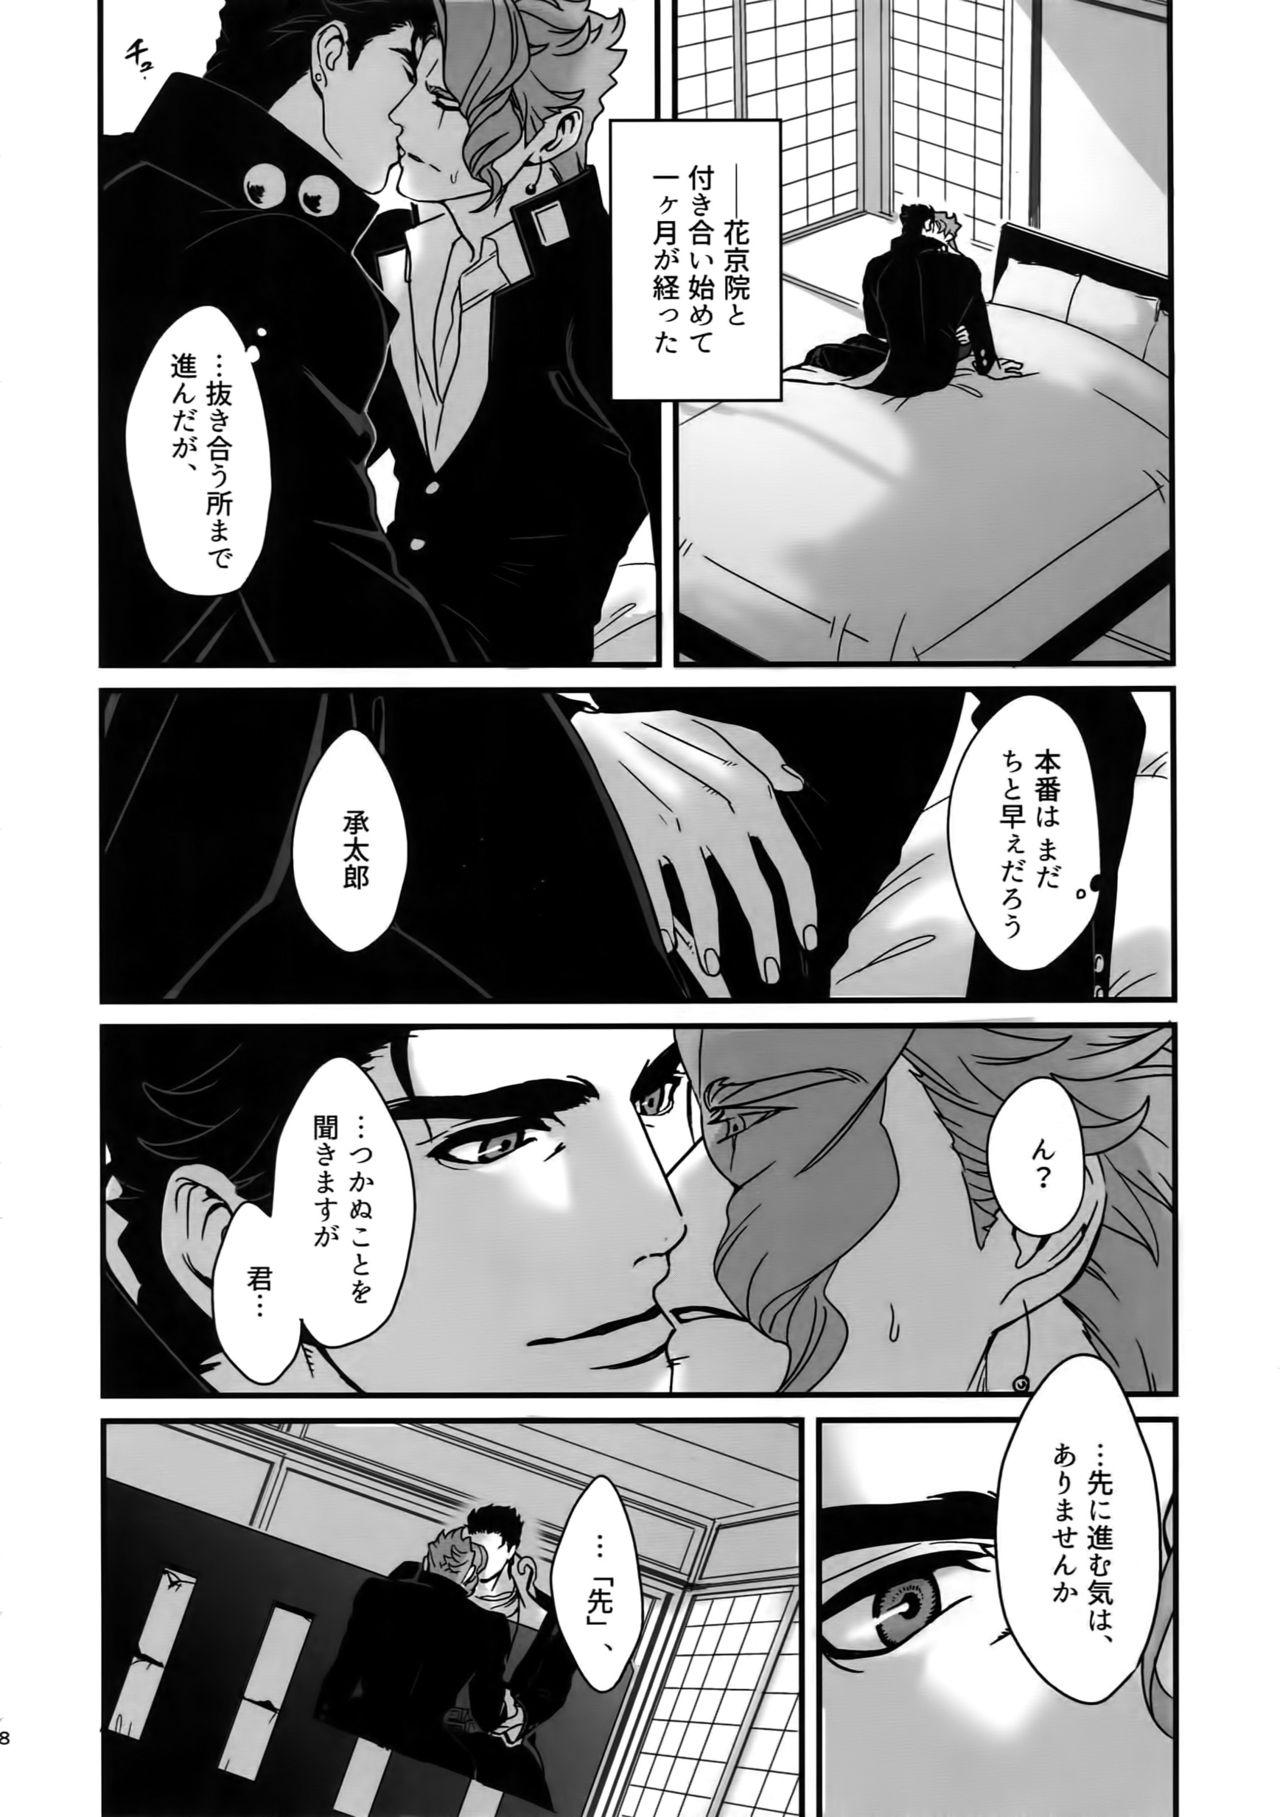 Gayemo NuruNuru JoKa Sairokubon 2 - Jojos bizarre adventure Kissing - Page 7